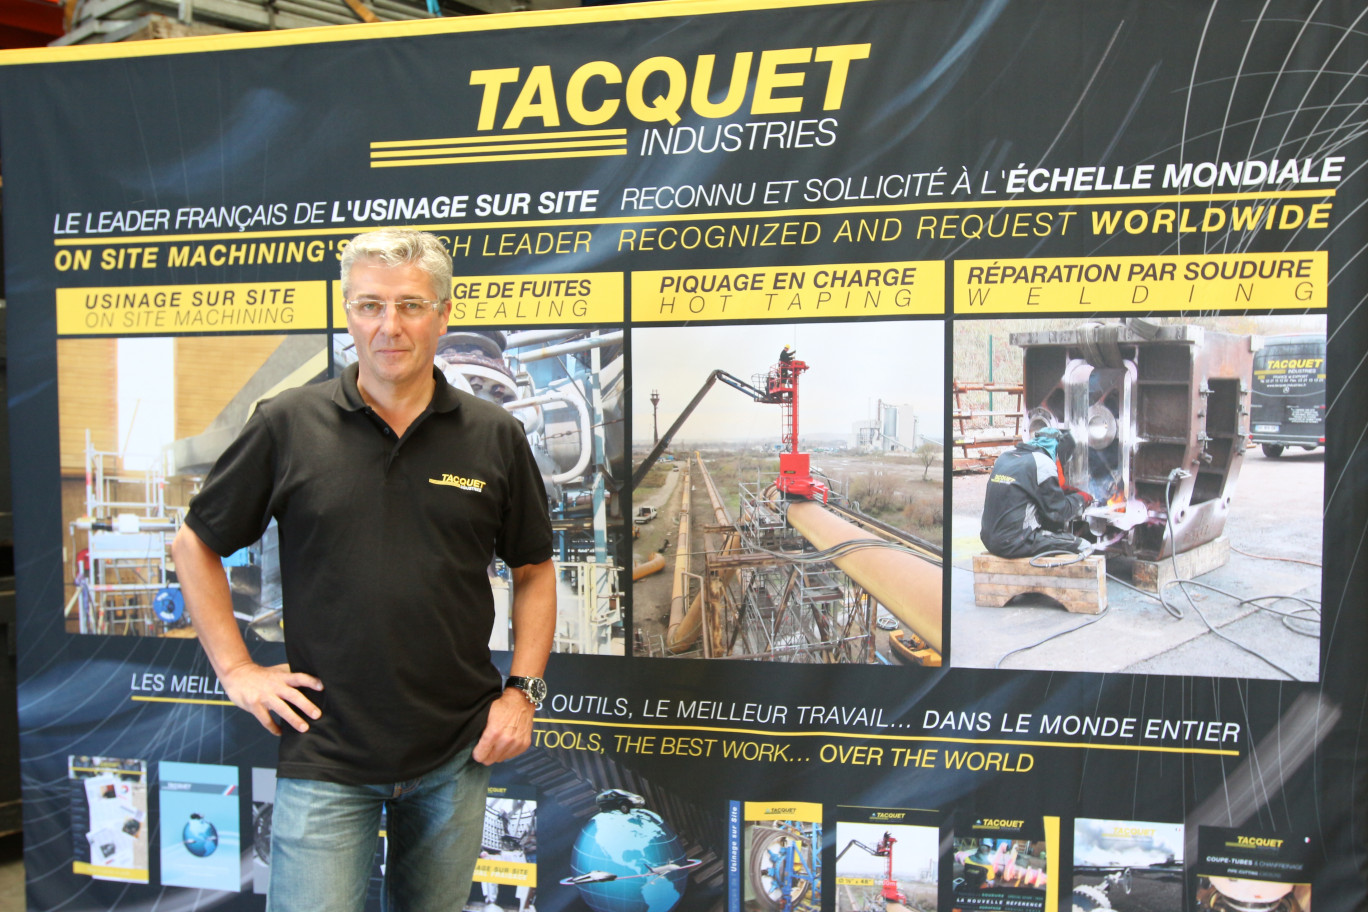 Pour les dix ans de son entreprise Jean-Pierre Tacquet a organisé une journée porte ouverte et (re)présenté ses différentes activités à ses clients et partenaires.